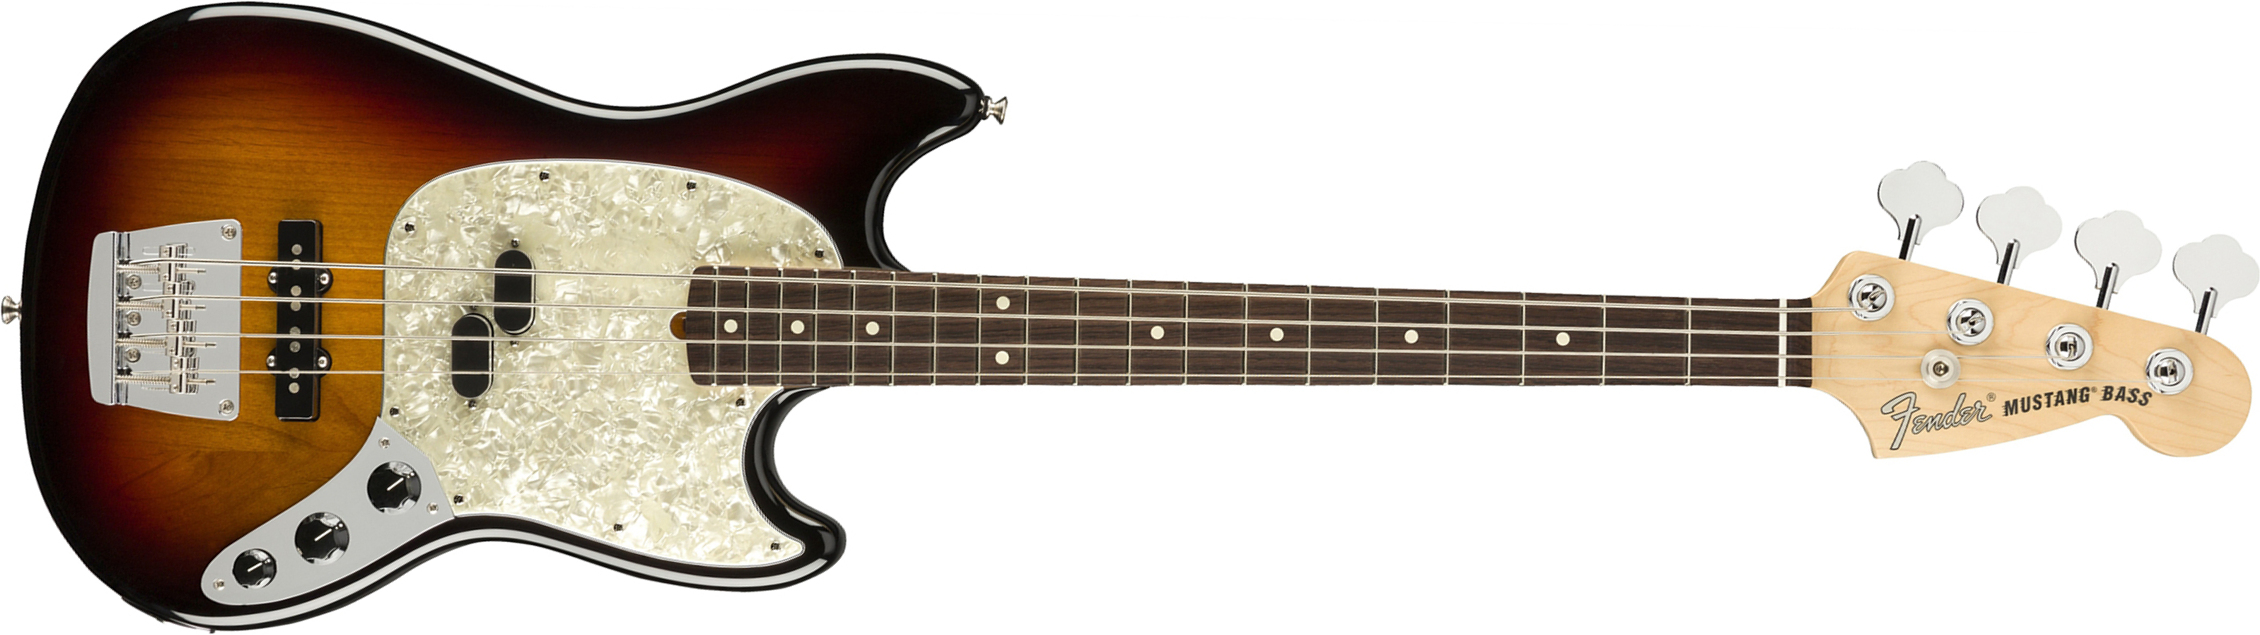 Fender Mustang Bass American Performer Usa Rw - 3-color Sunburst - Basse Électrique Enfants - Main picture